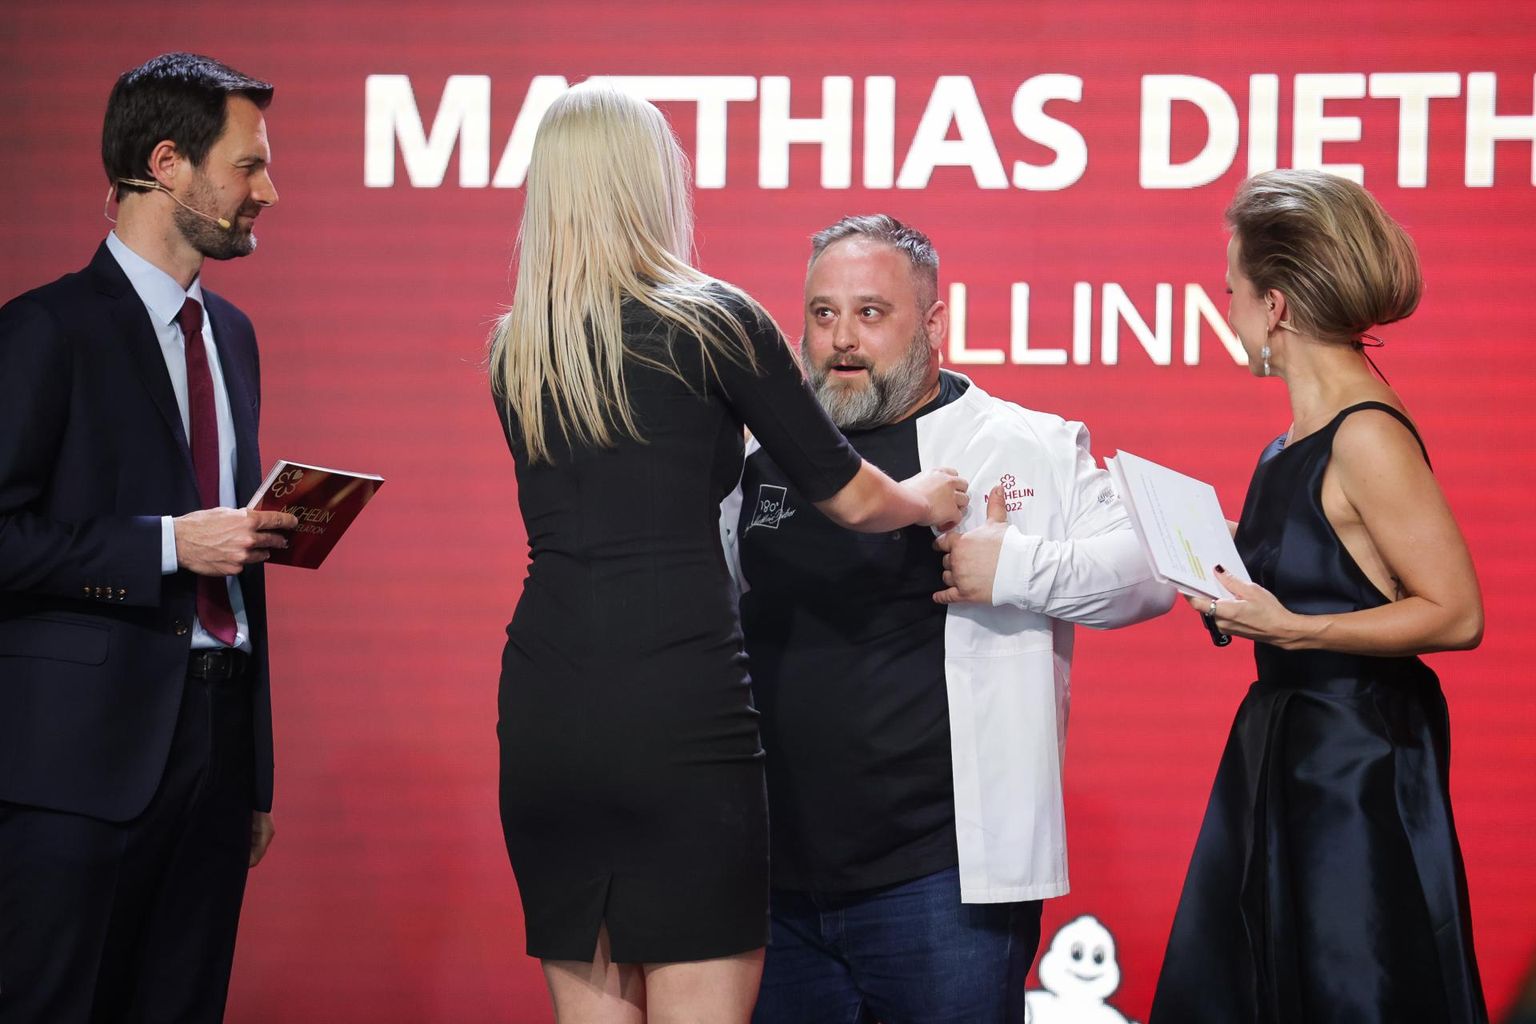 Kui aasta tagasi pälvis Matthias Diether ühe Michelini tärni oma restoraniga 180 kraadi, siis sel aastal sai ta teise tärni juurde.